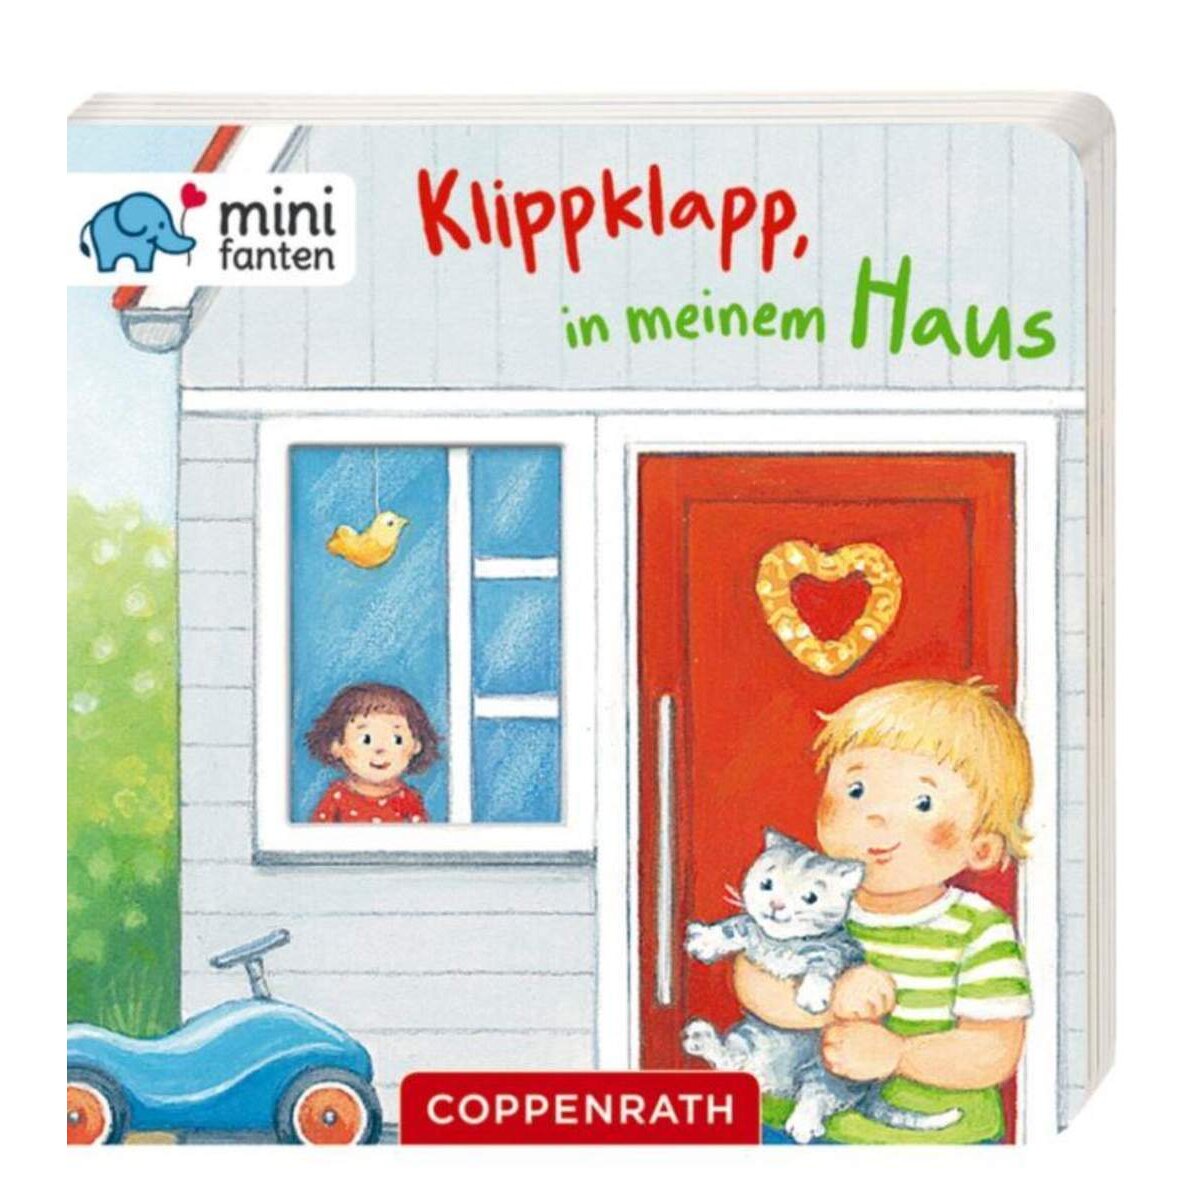 Coppenrath Verlag minifanten 11: Klippklapp, in meinem Haus